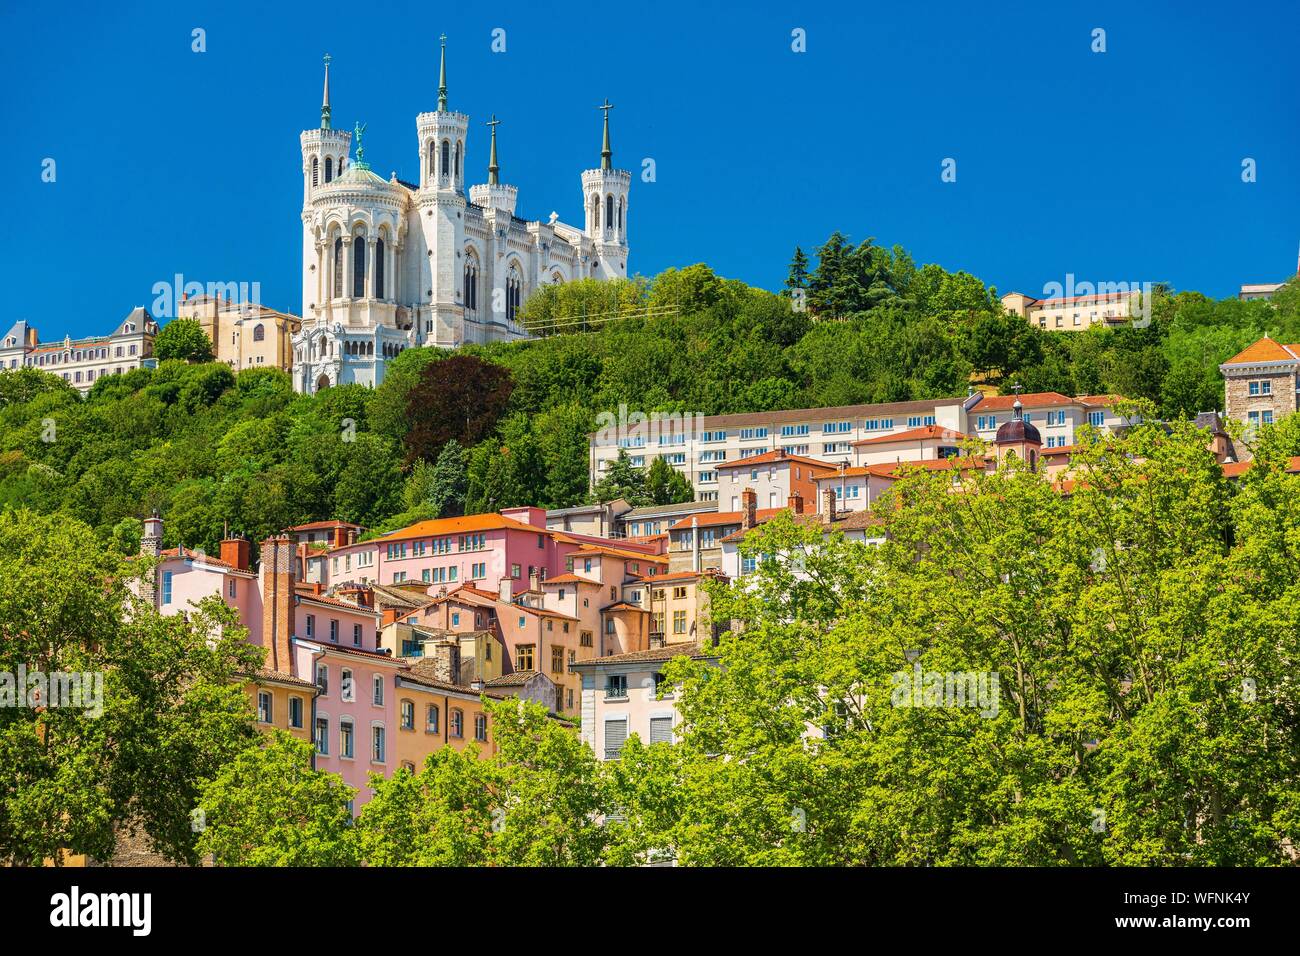 Frankreich, Rhone, Lyon, historische Stätte als Weltkulturerbe von der UNESCO, Blick auf Notre Dame De Fourviere Basilica Stockfoto